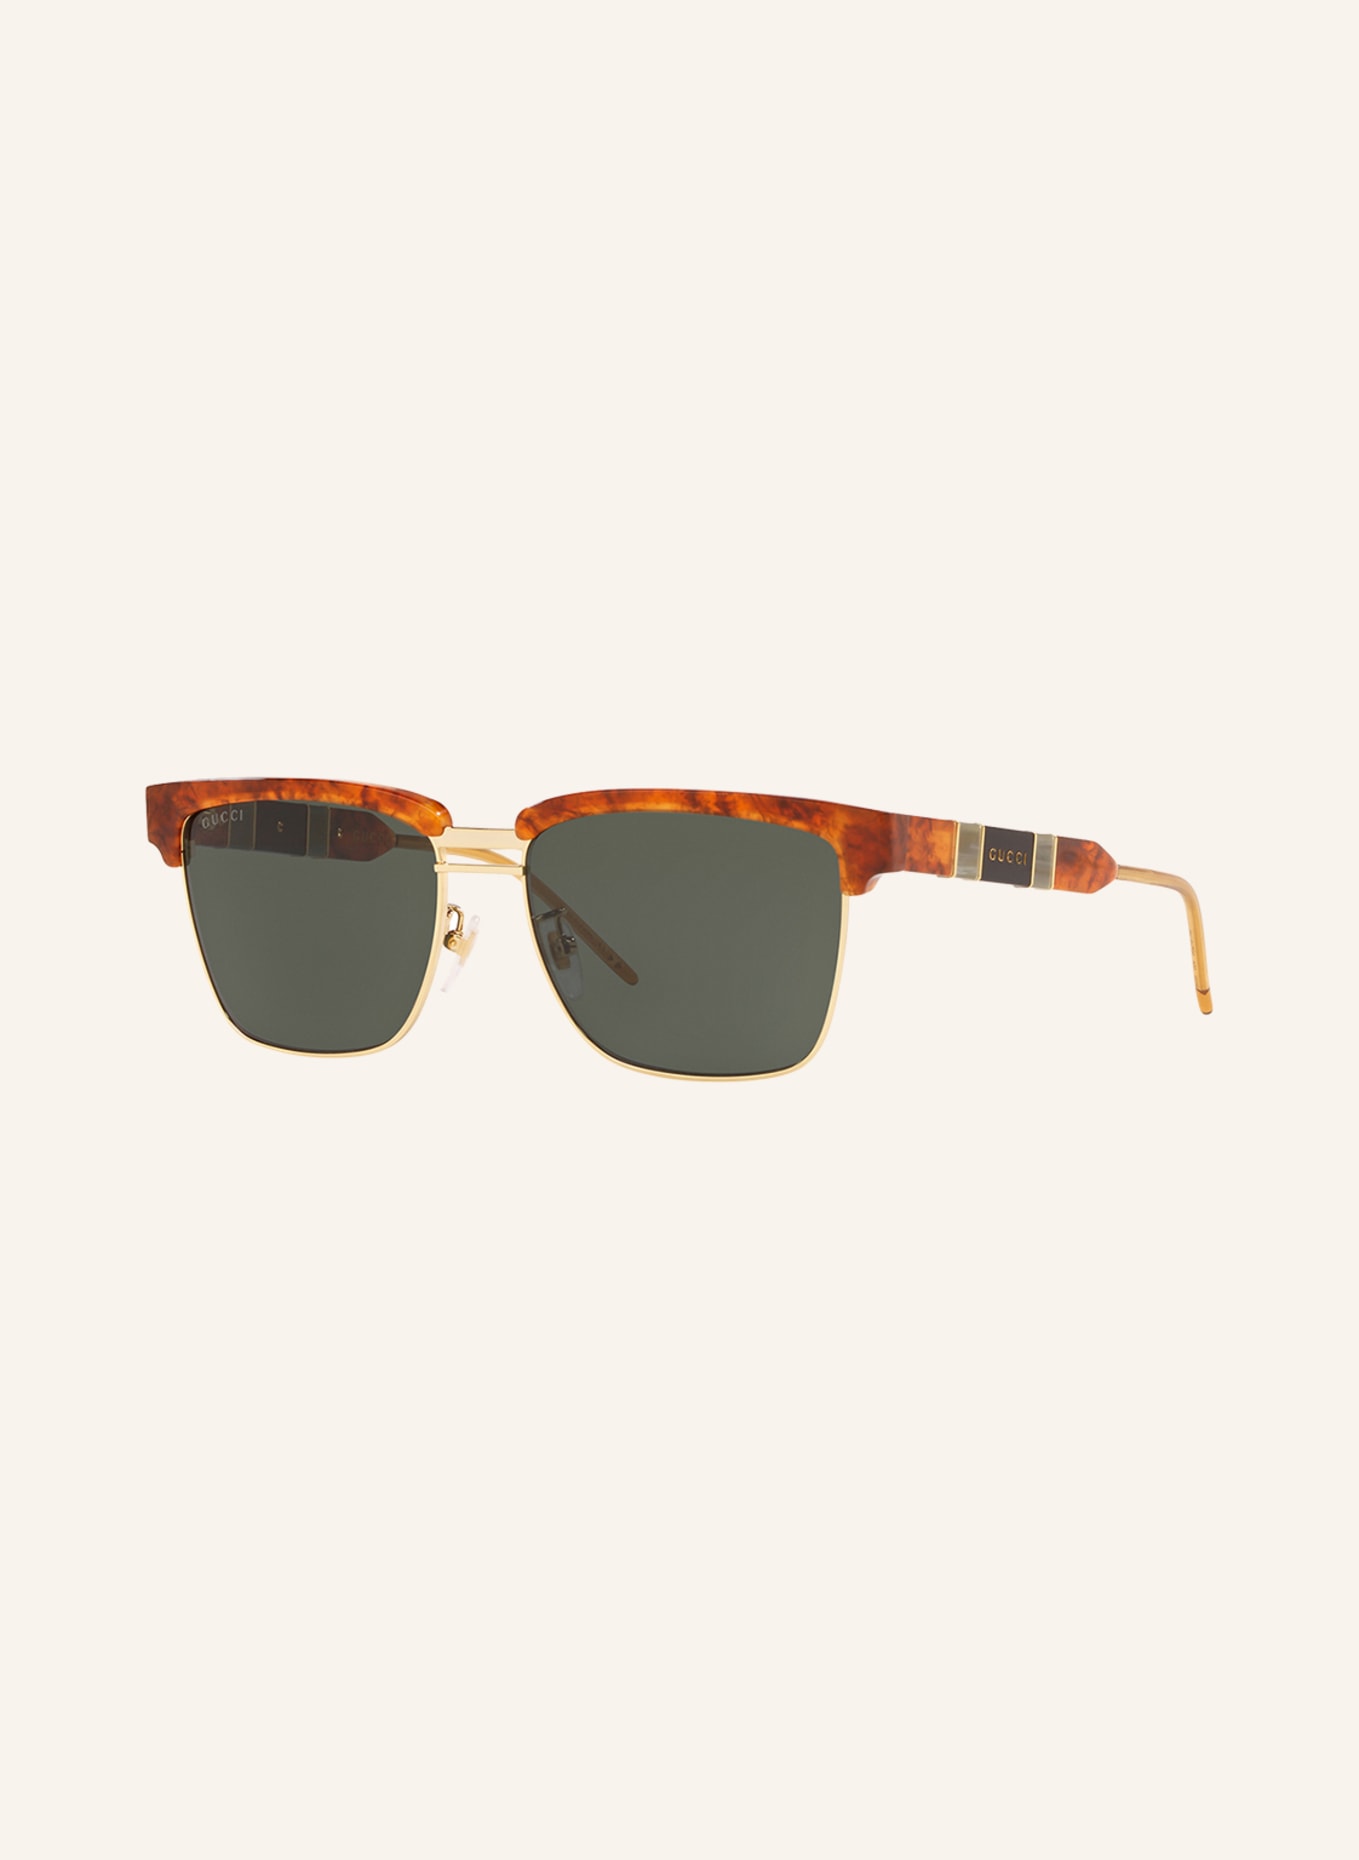 GUCCI Sunglasses GG0603S, Color: 4402J1 - HAVANA/GOLD/DARK GRAY (Image 1)